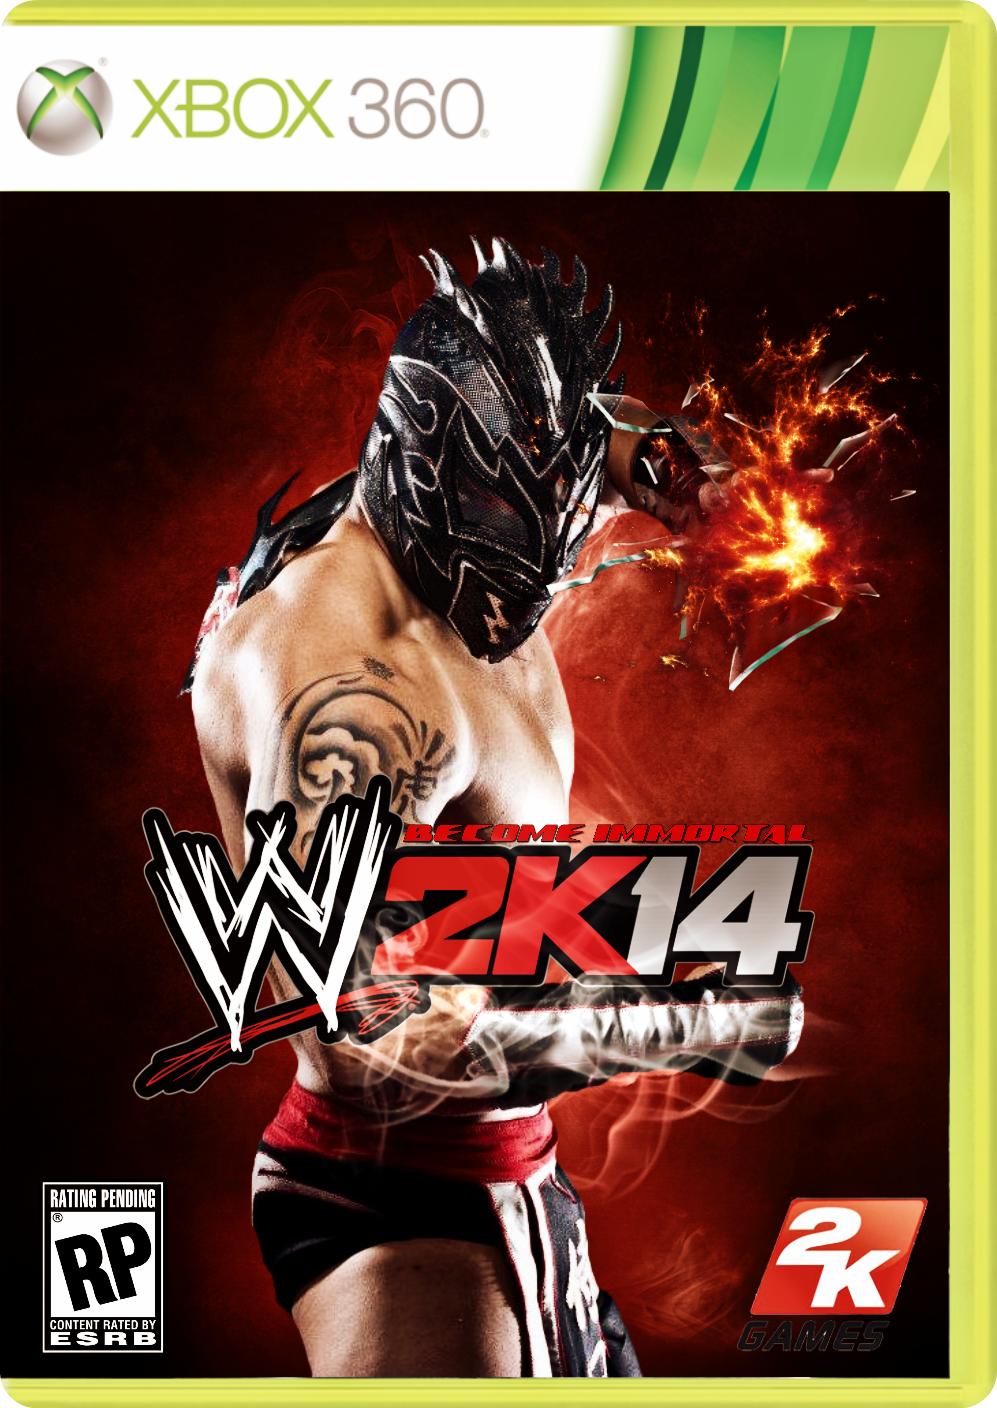 Samuray Del Sol WWE2K14 Cover